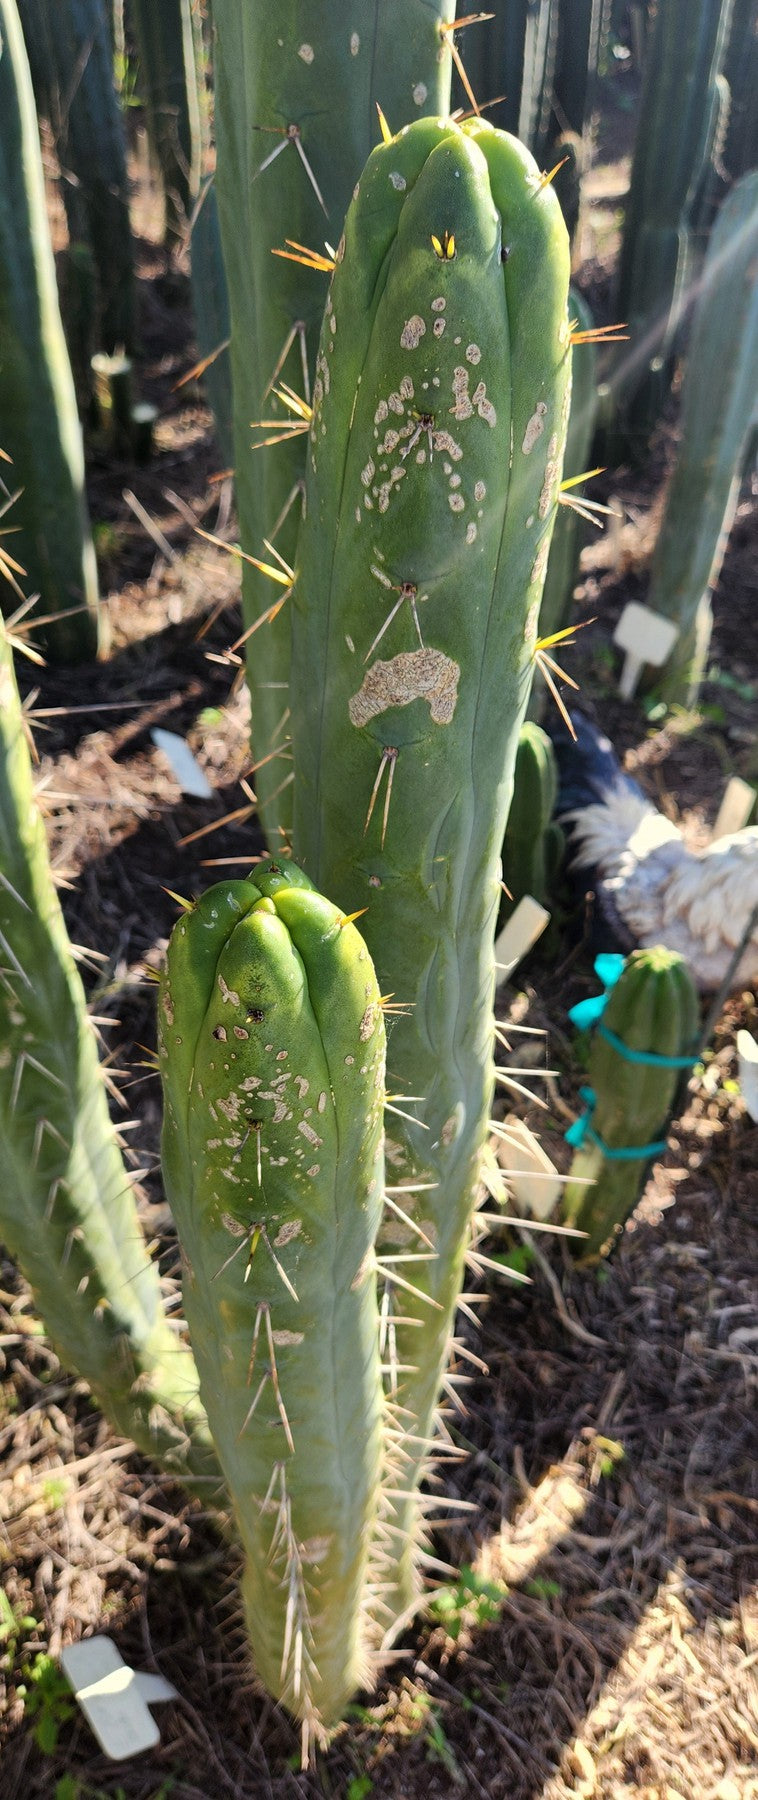 #EC209 EXACT Trichocereus Bridgesii Jiimz 4 Rib Cactus Cutting 15"